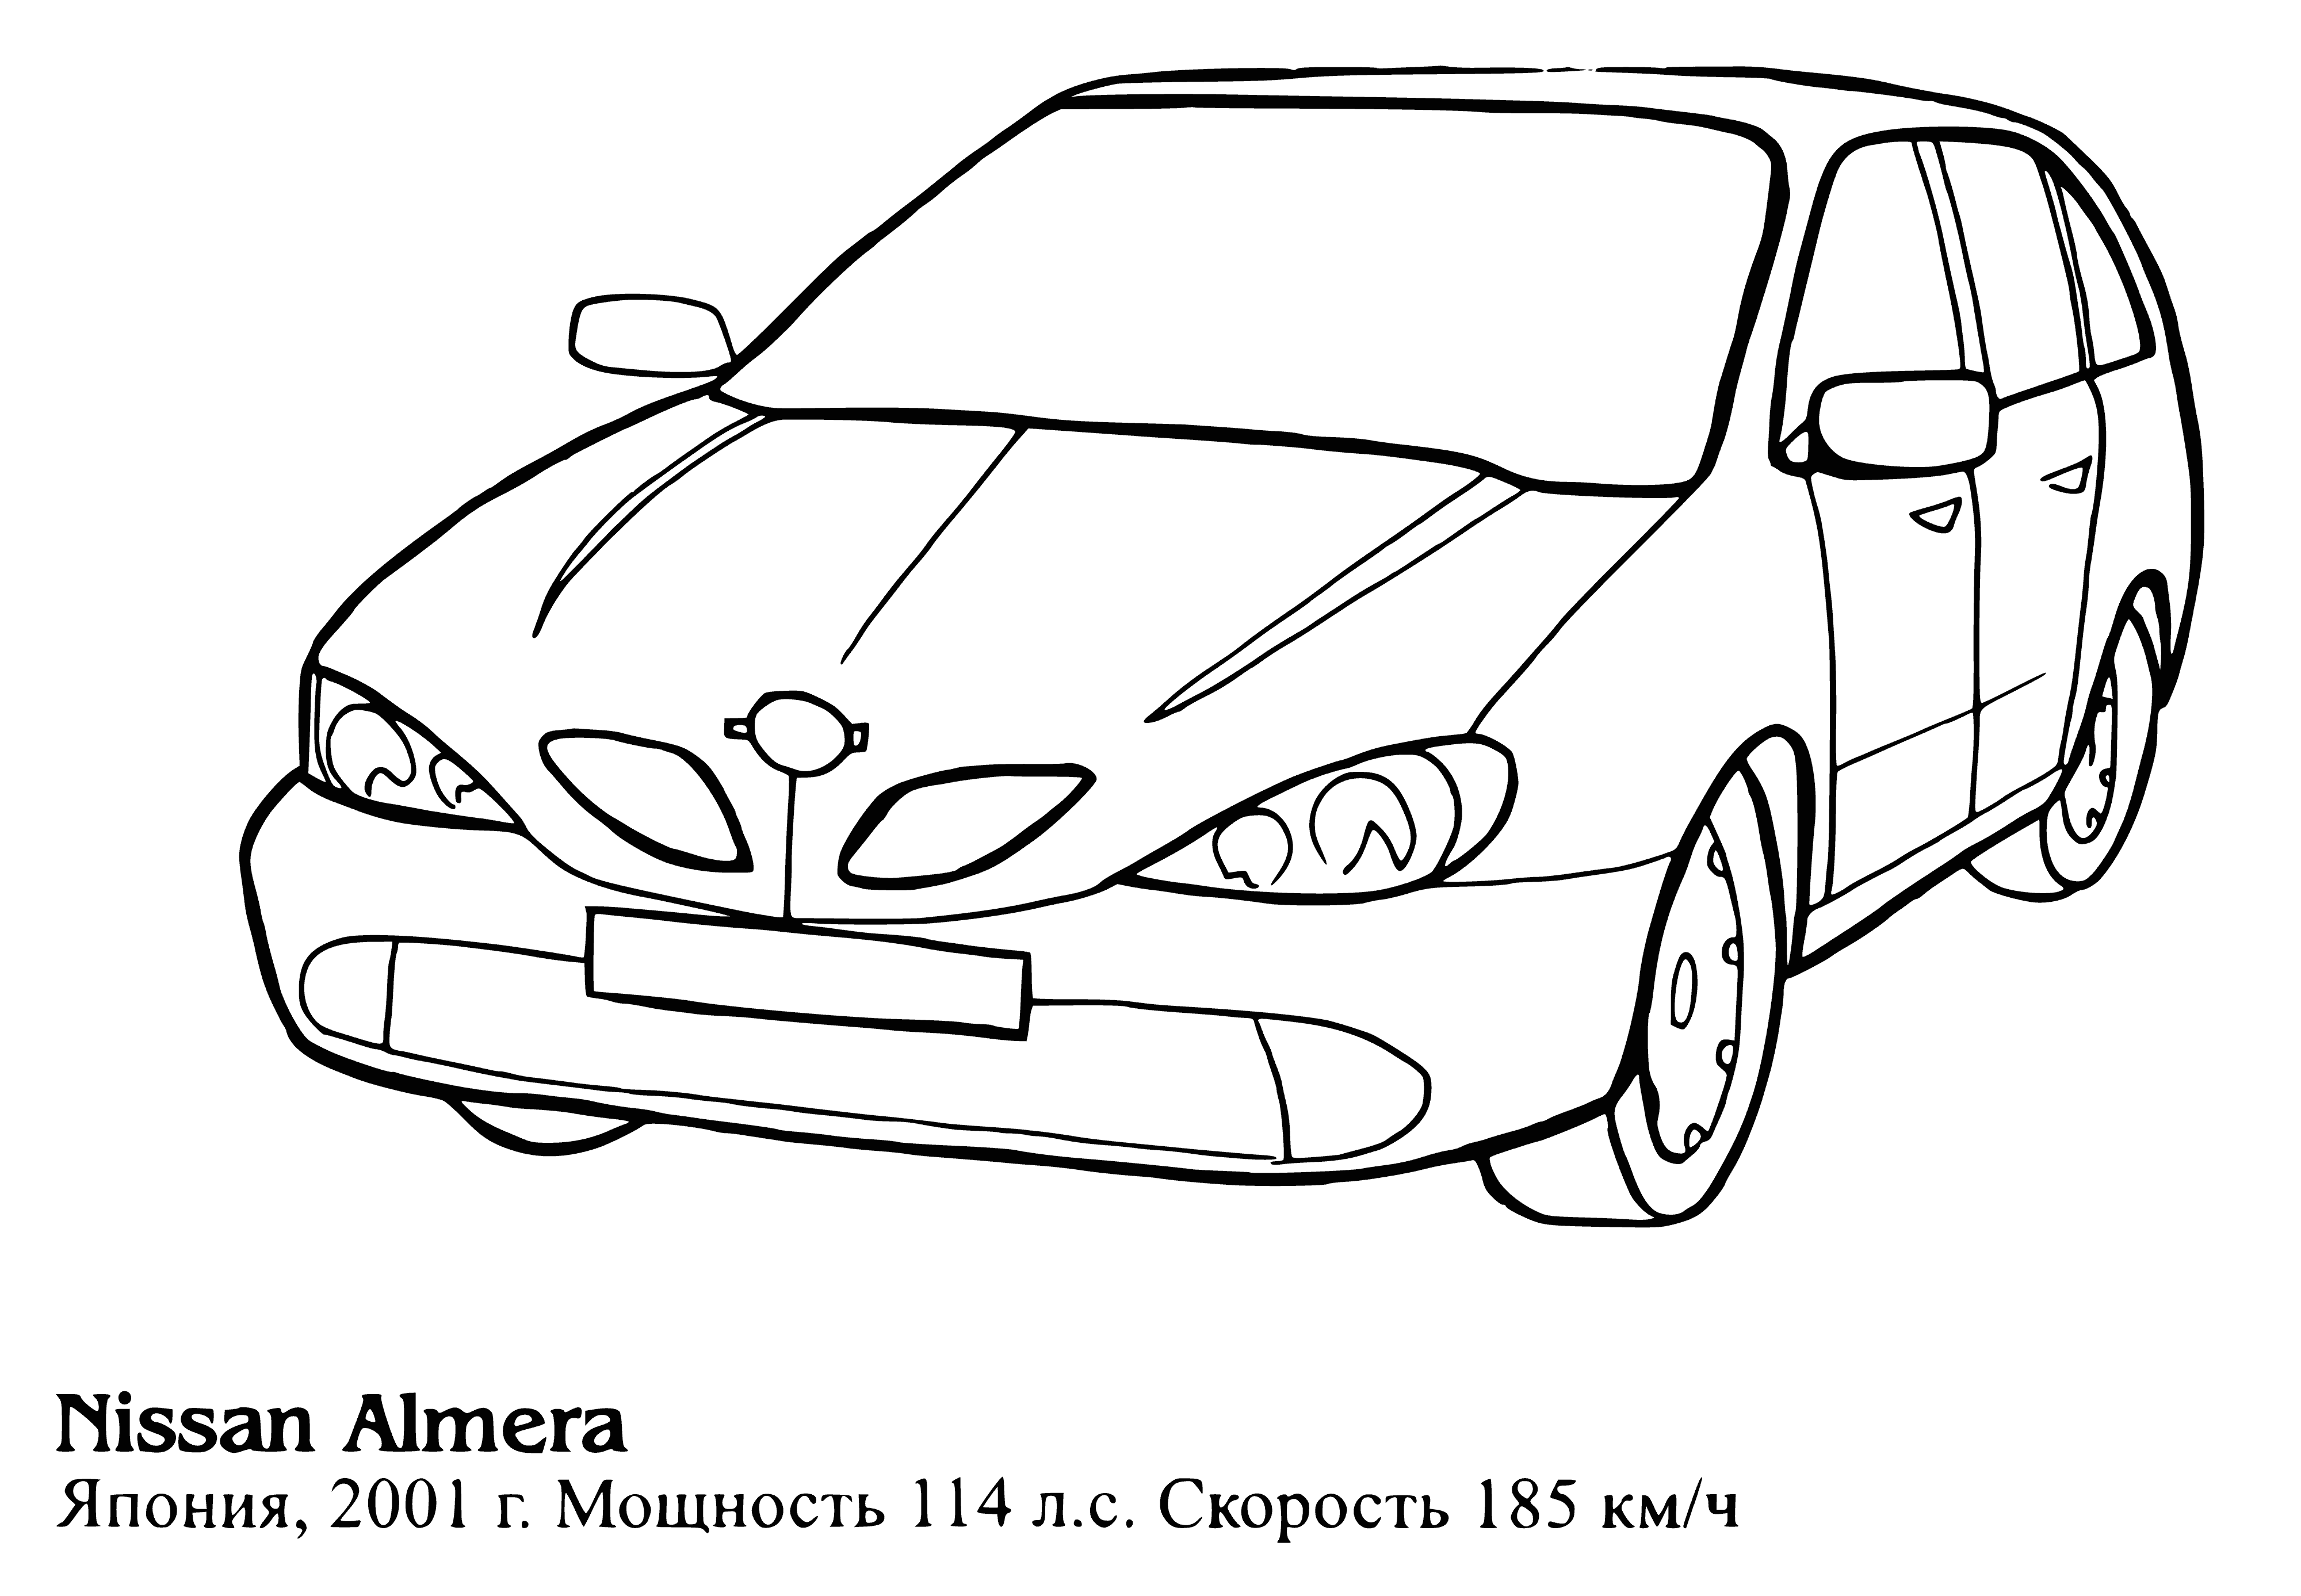 Nissan Almera boyama sayfası